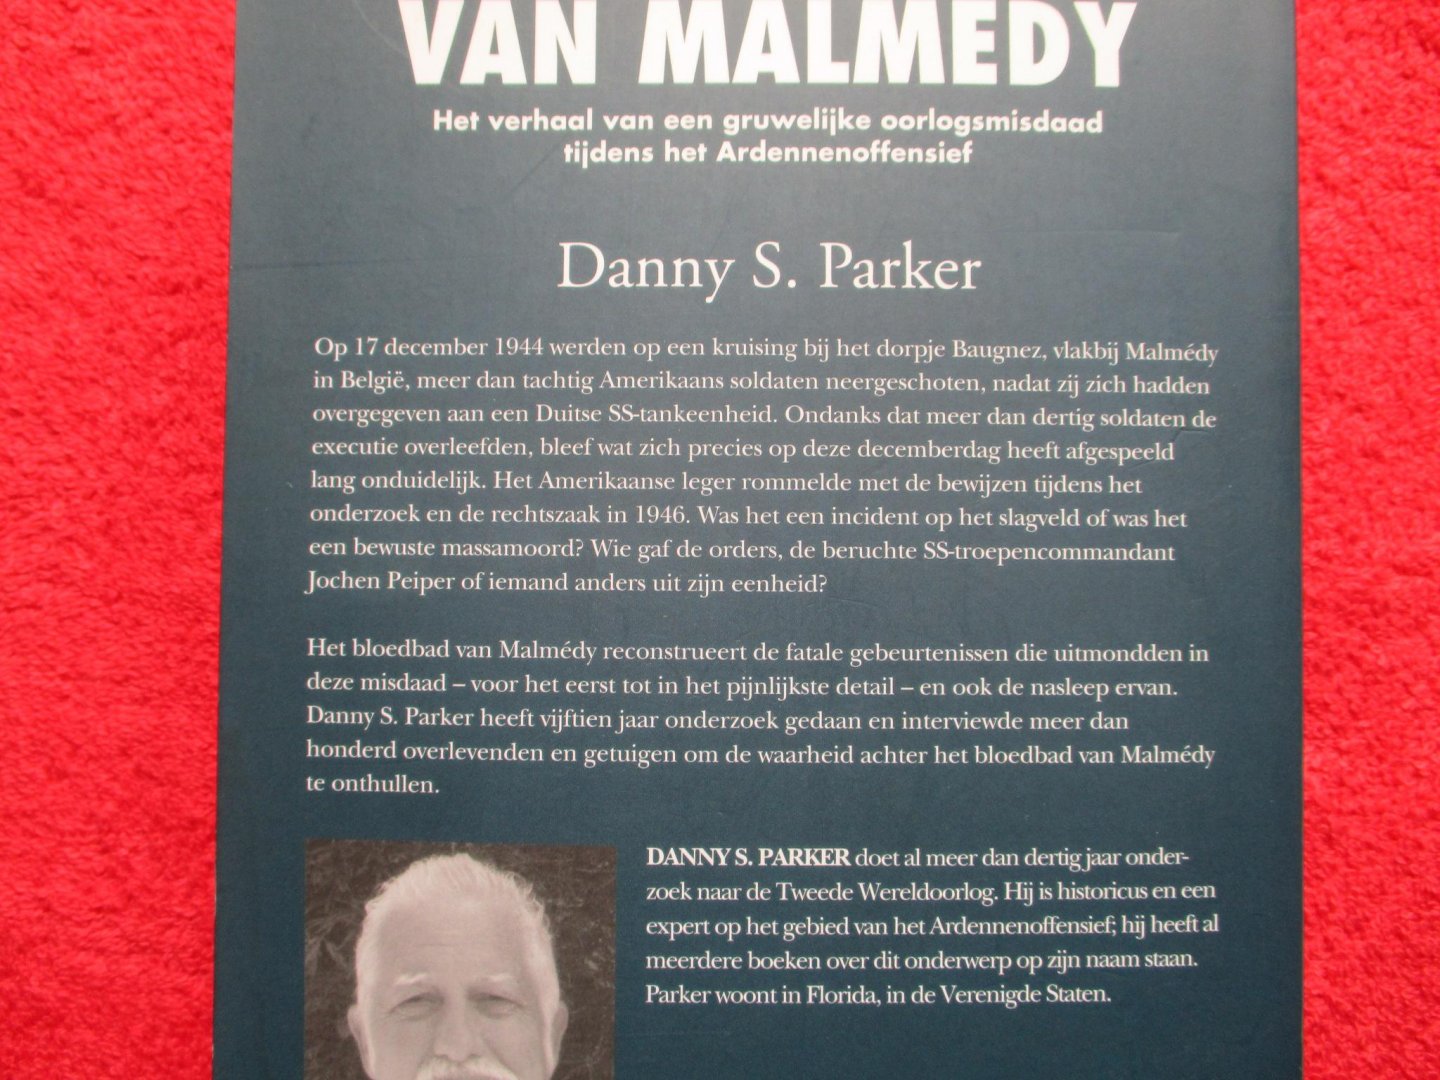 Parker, Danny. - Het bloedbad van Malmedy. Een gruwelijke oorlogsmisdaad tijdens het Ardennenoffensief.